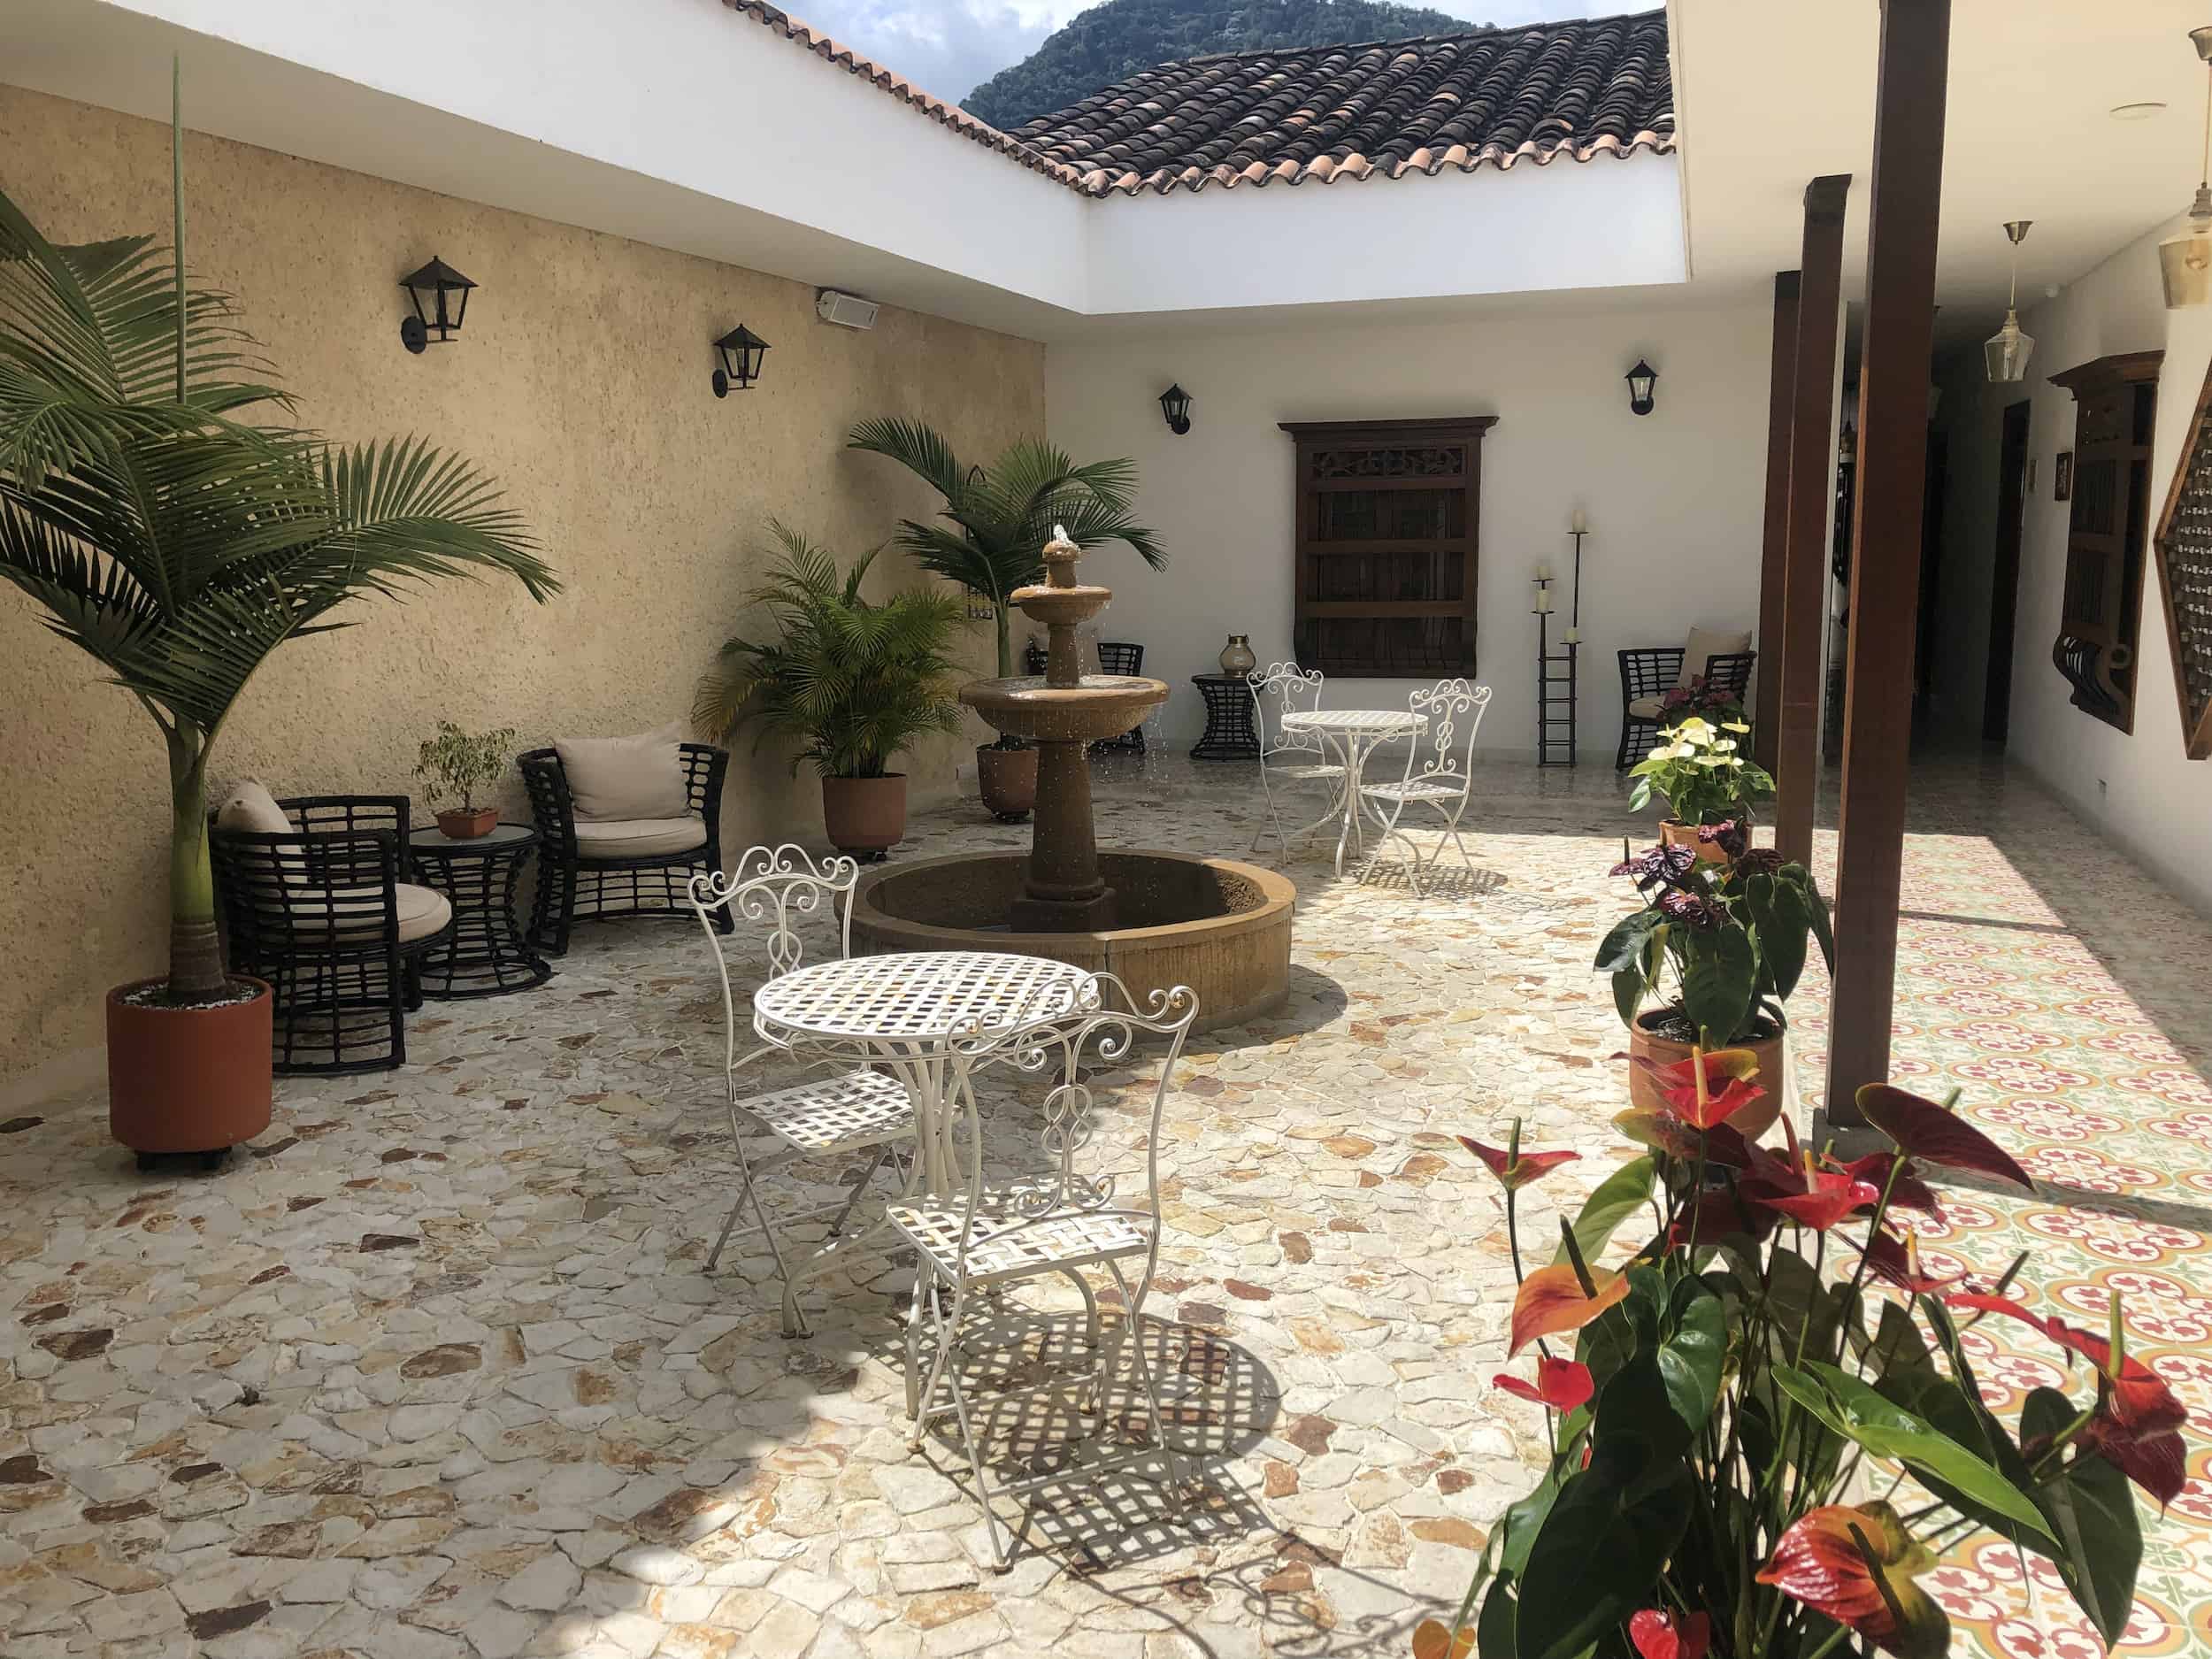 Courtyard at Casa Passiflora